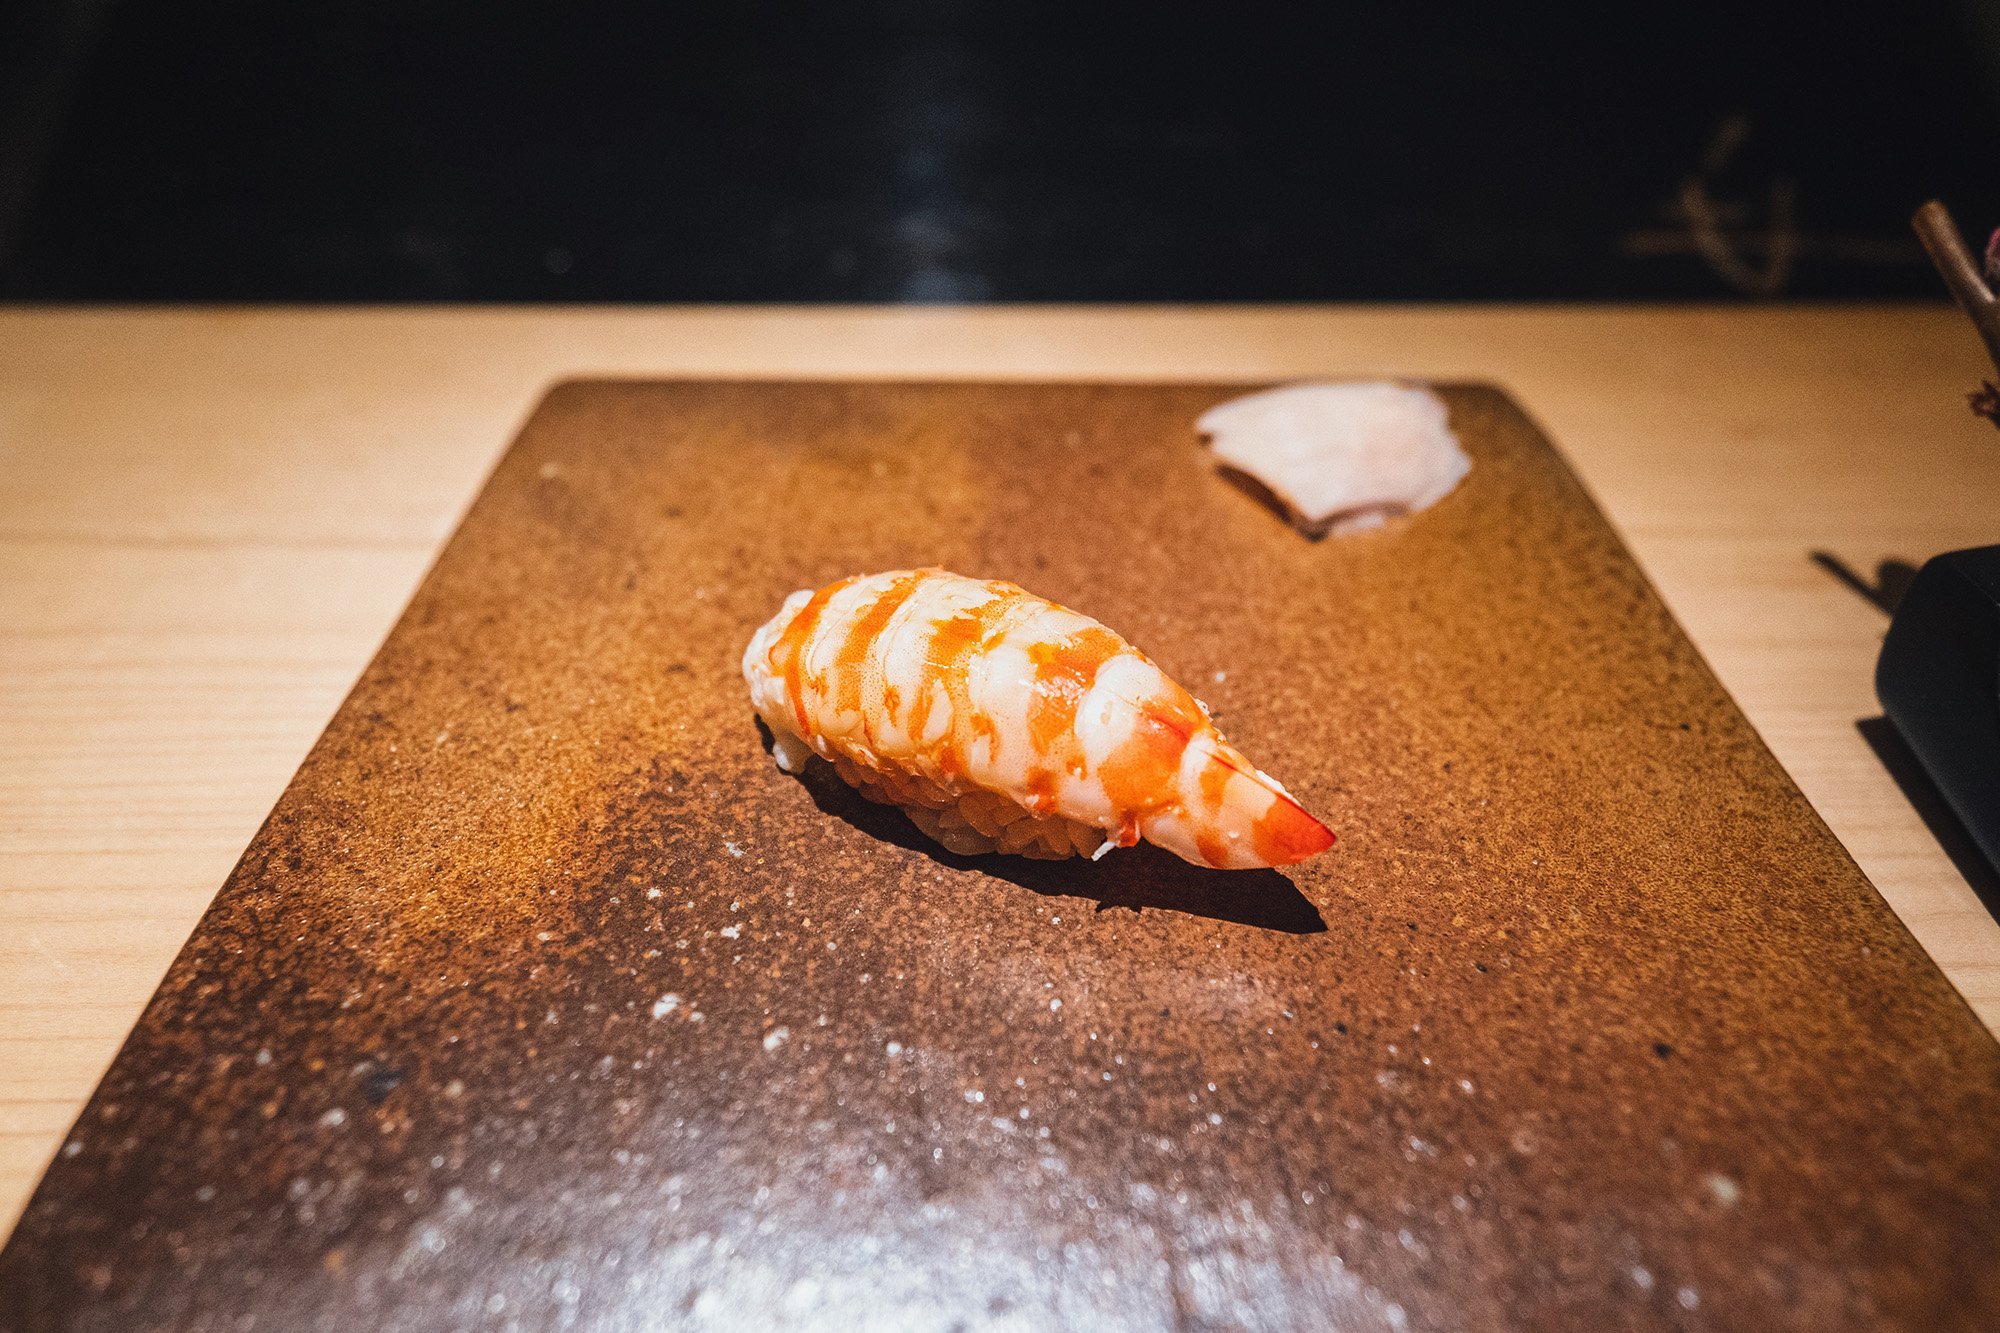 Ebi / shrimp